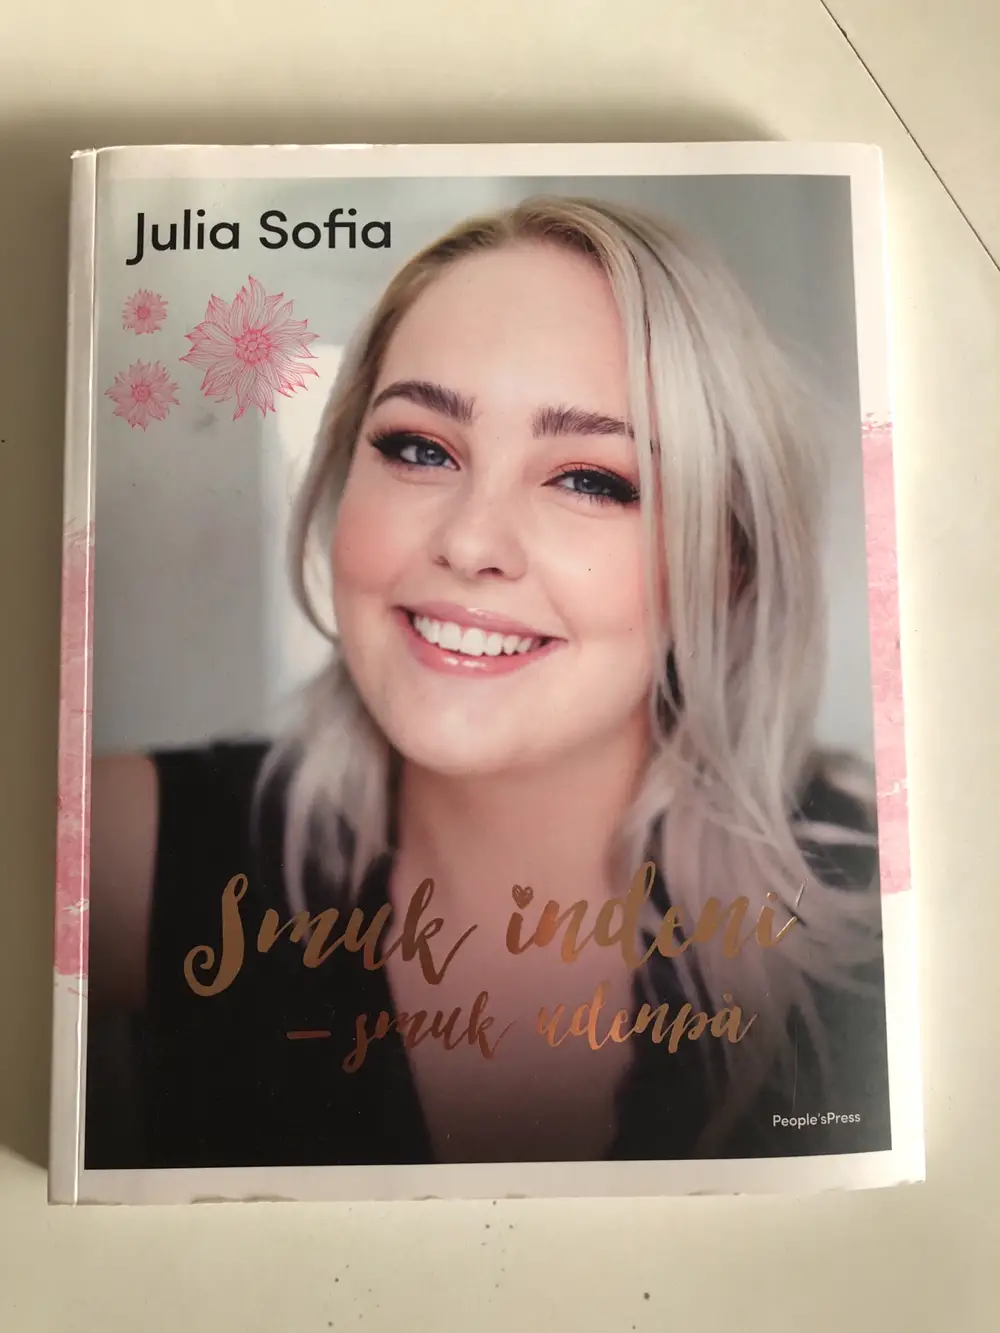 Julia Sofia Smuk indeni - Smuk udenpå